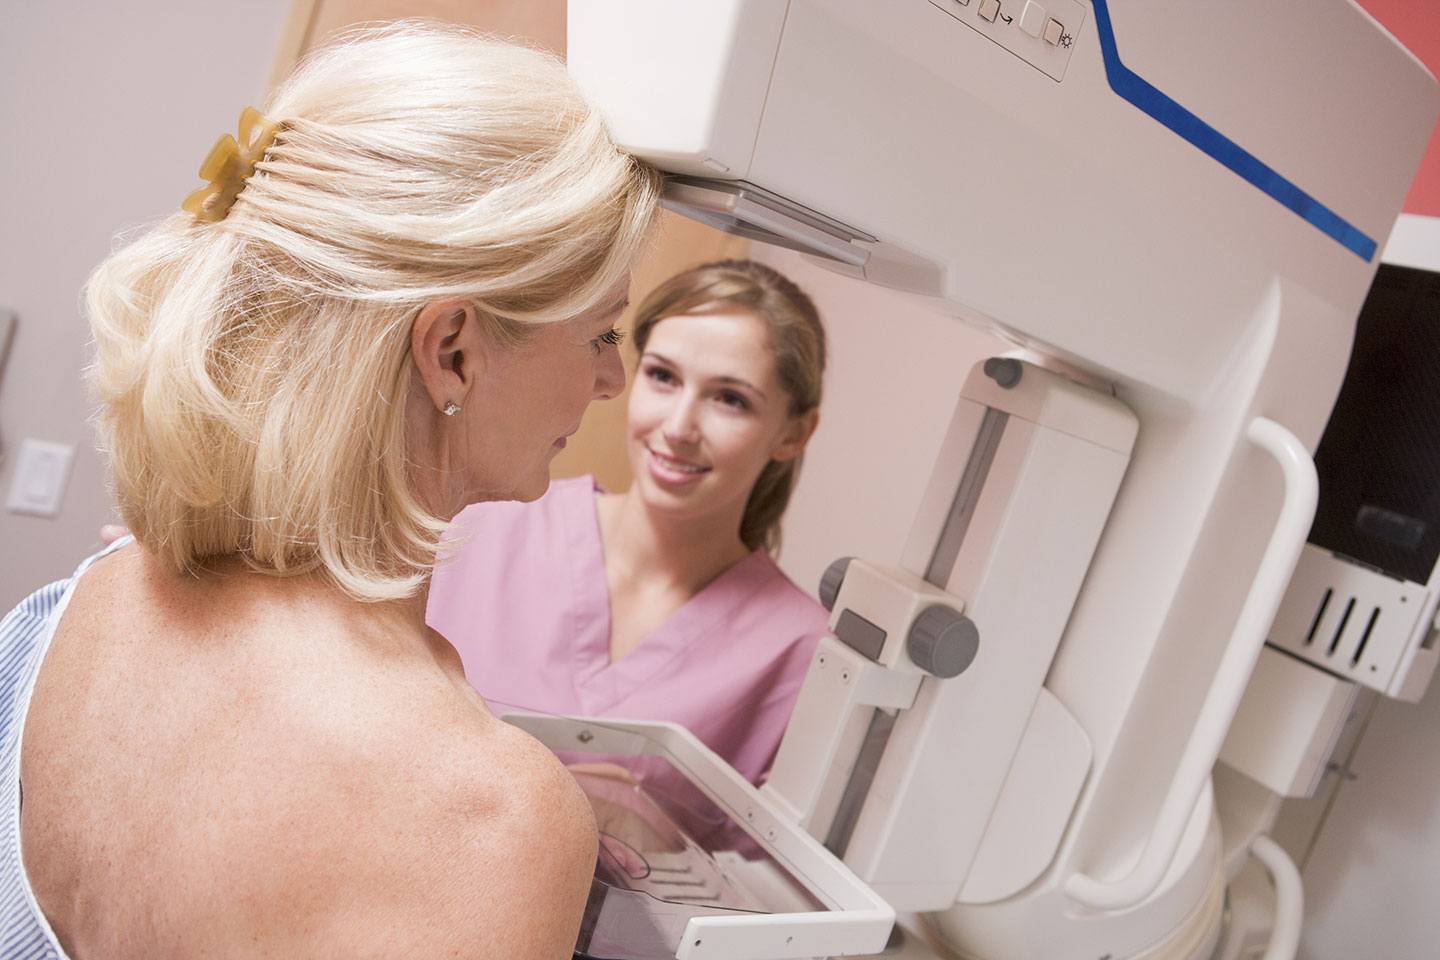 Toque de cuidado: tudo o que você precisa saber sobre a mamografia